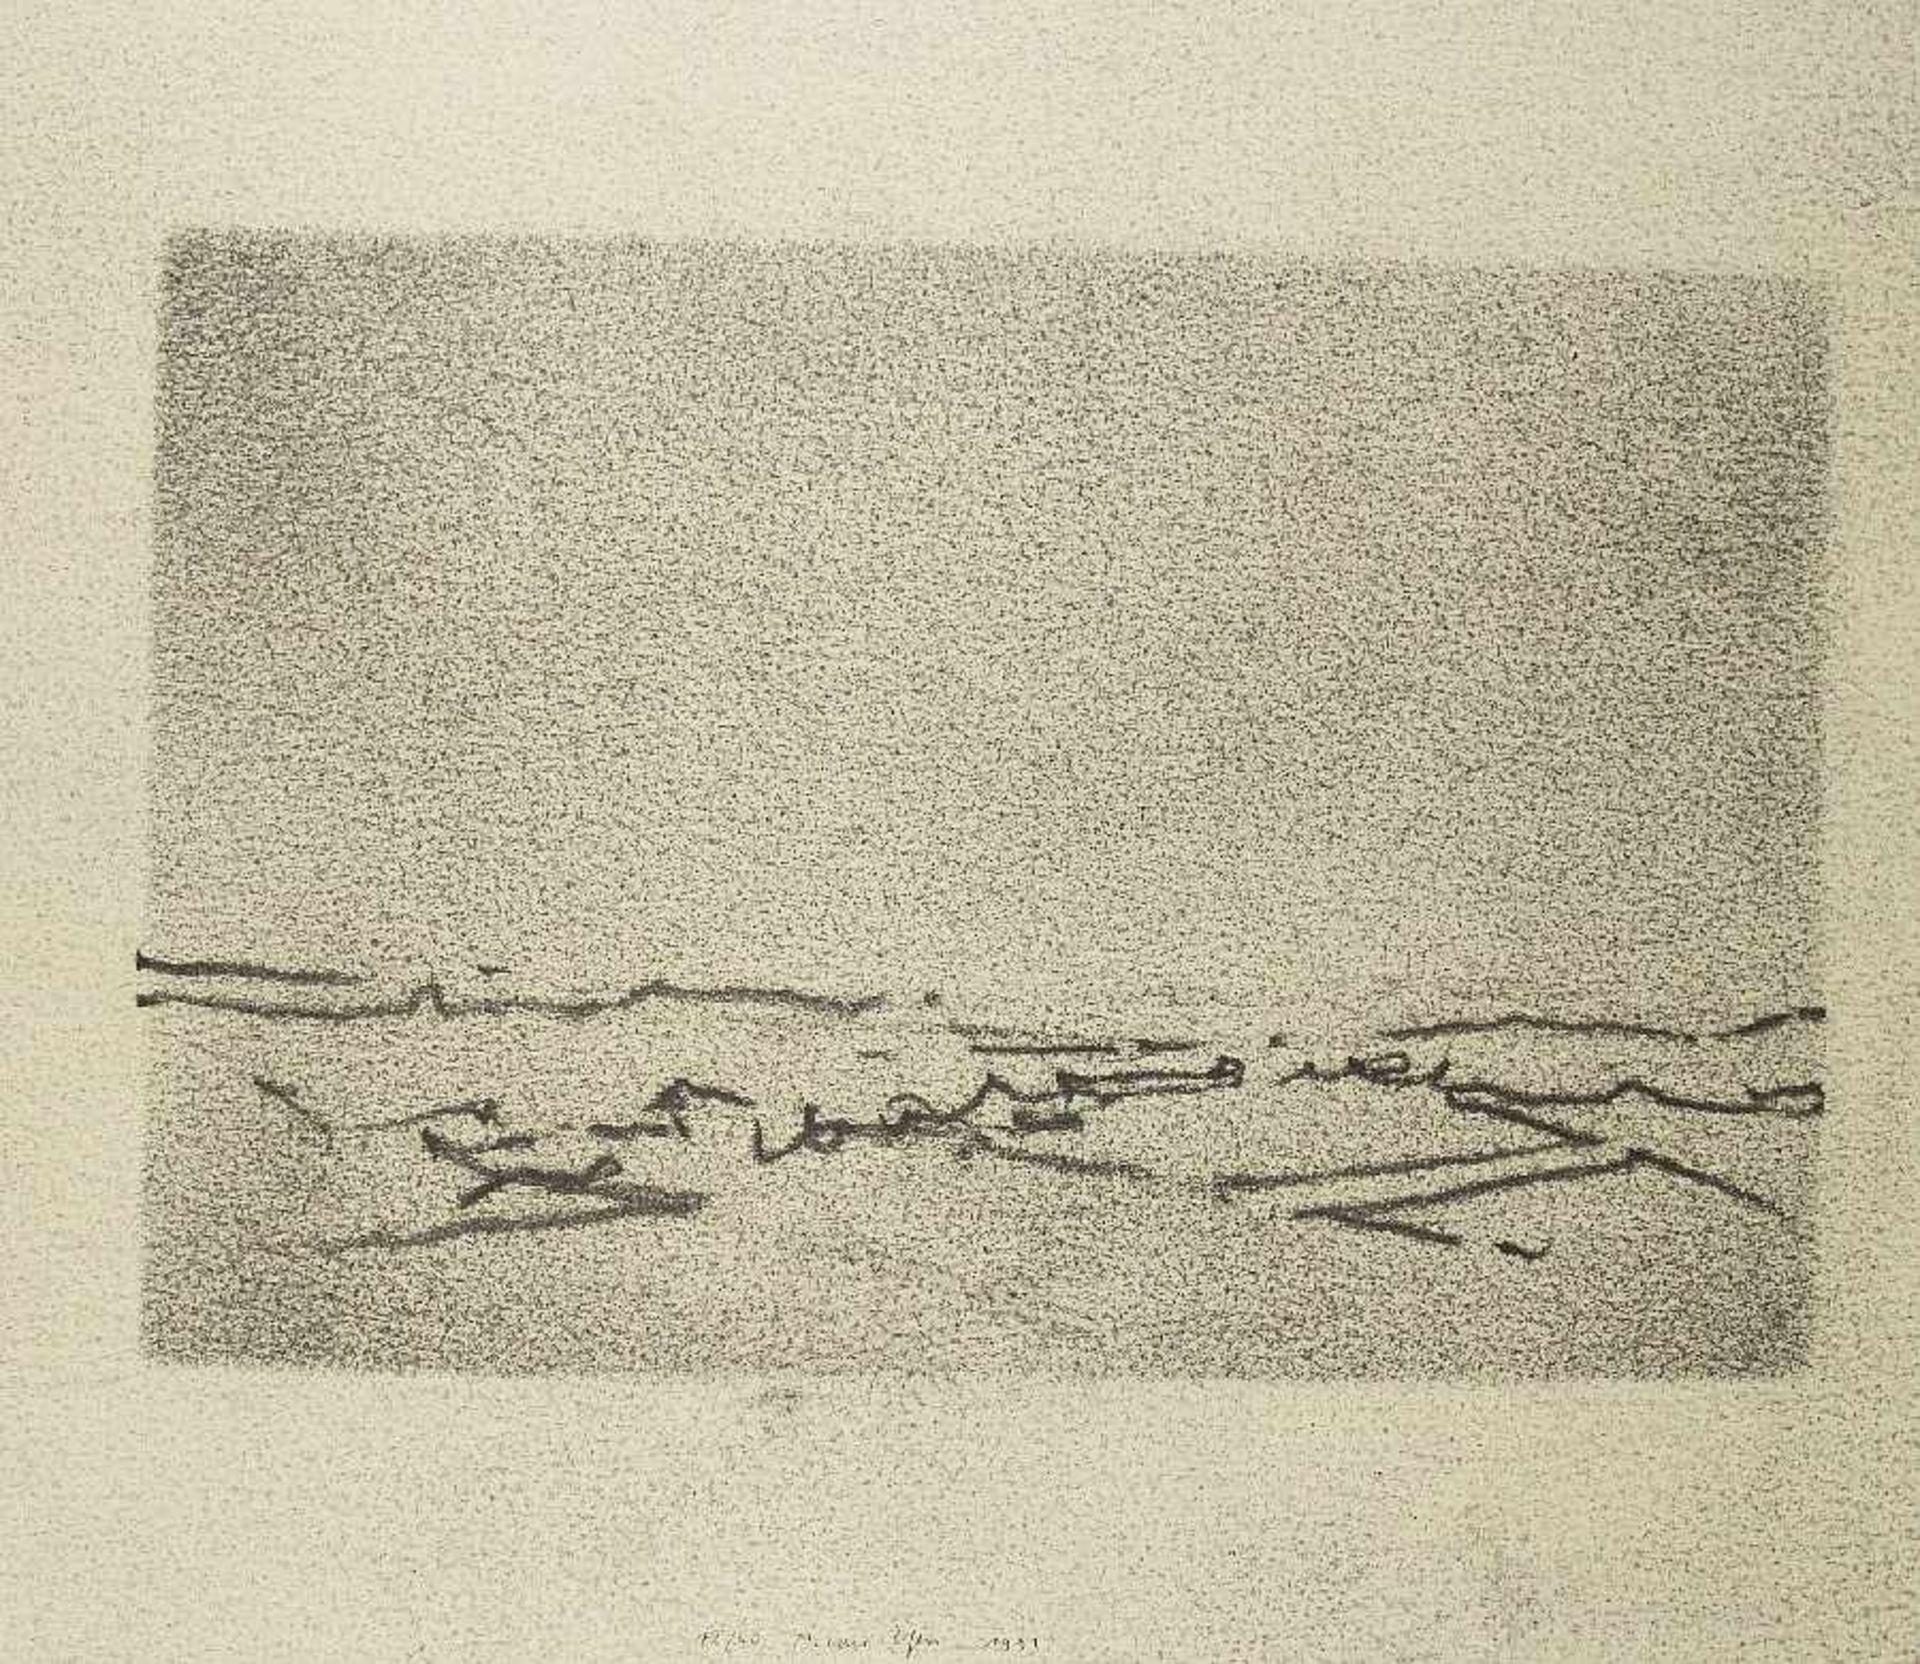 Andreas Gursky u. a. Landschaften (Mappe Kunstring Folkwang Essen) 6 Offsetlithografien auf Papier - Bild 3 aus 7